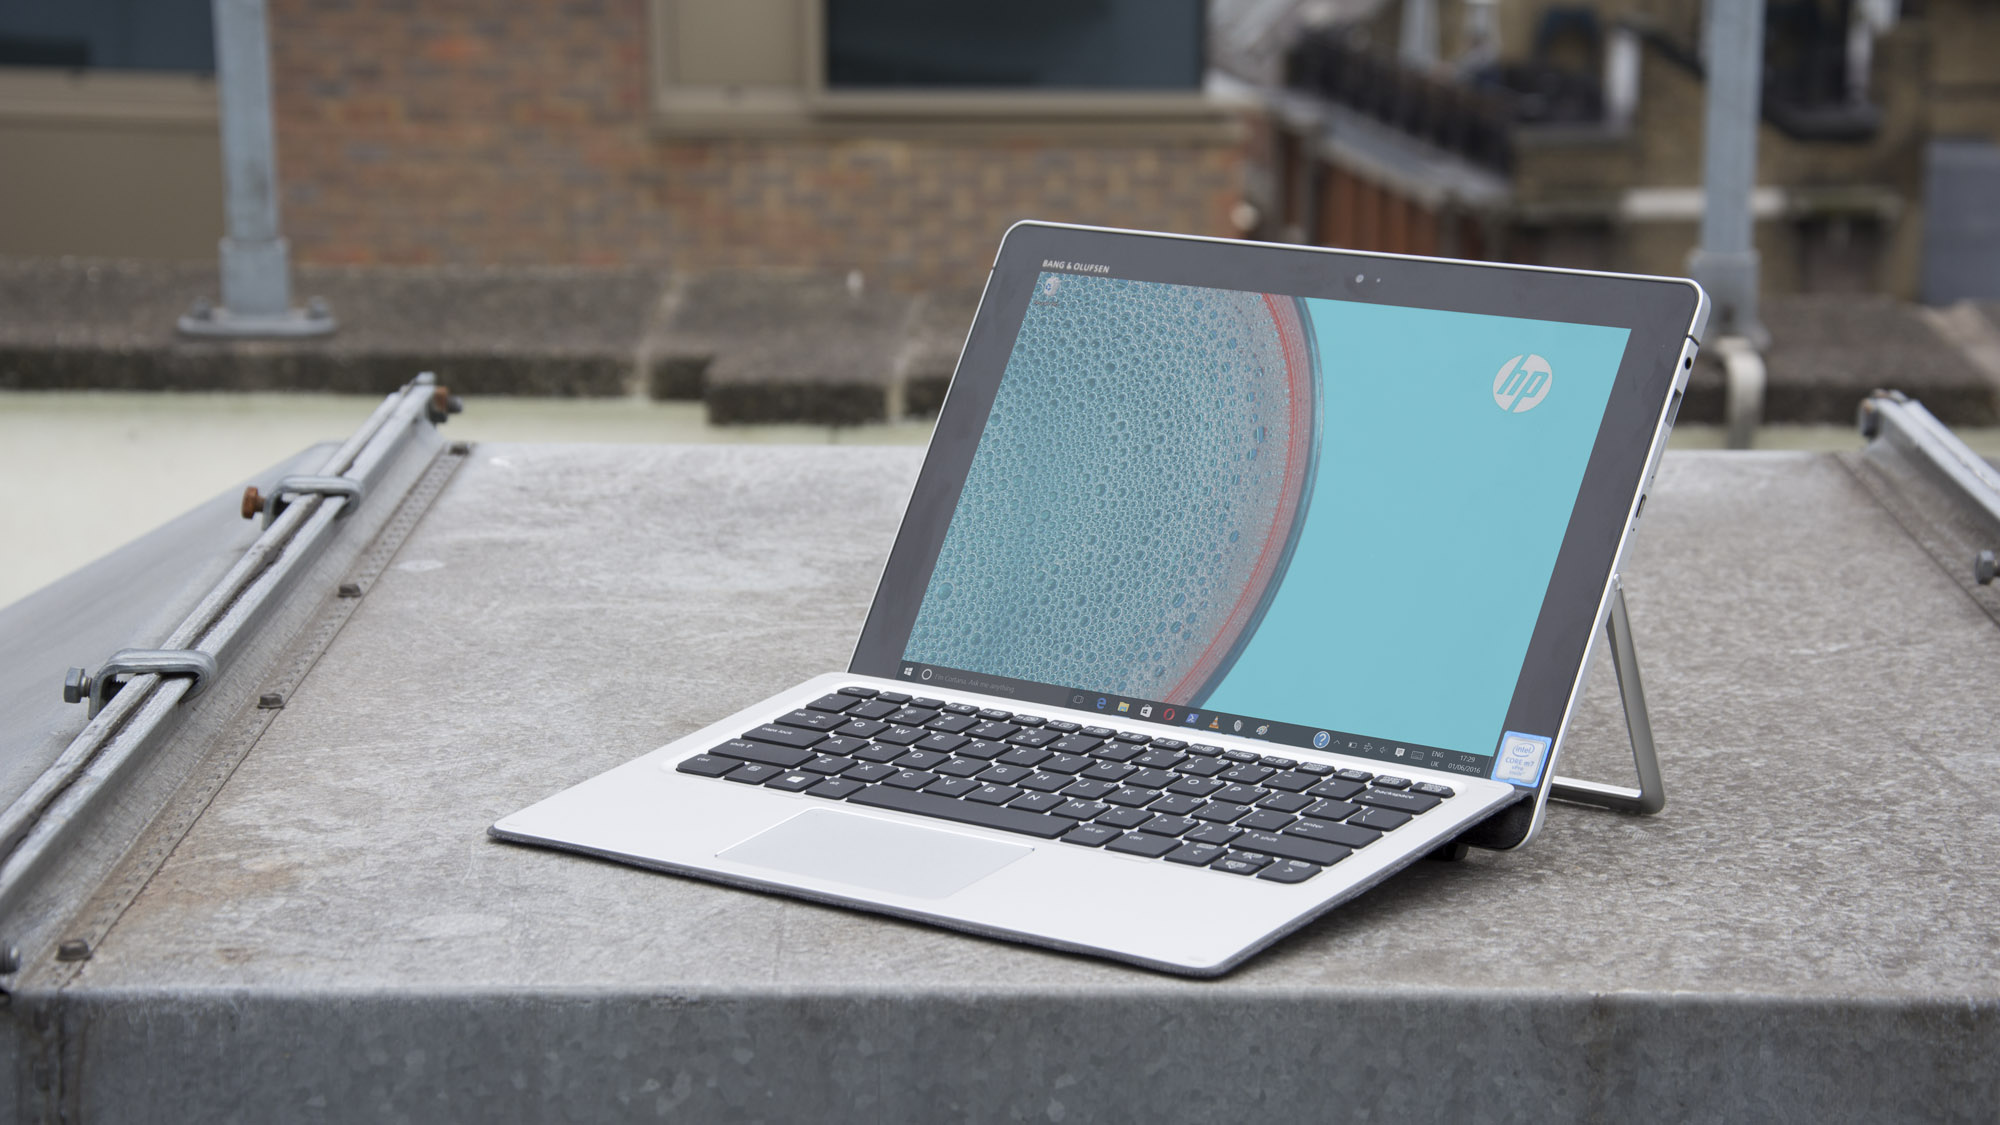 HP Elite x2 ülevaade: mõnes mõttes ületab Surface Pro 4 (kuid mitte)